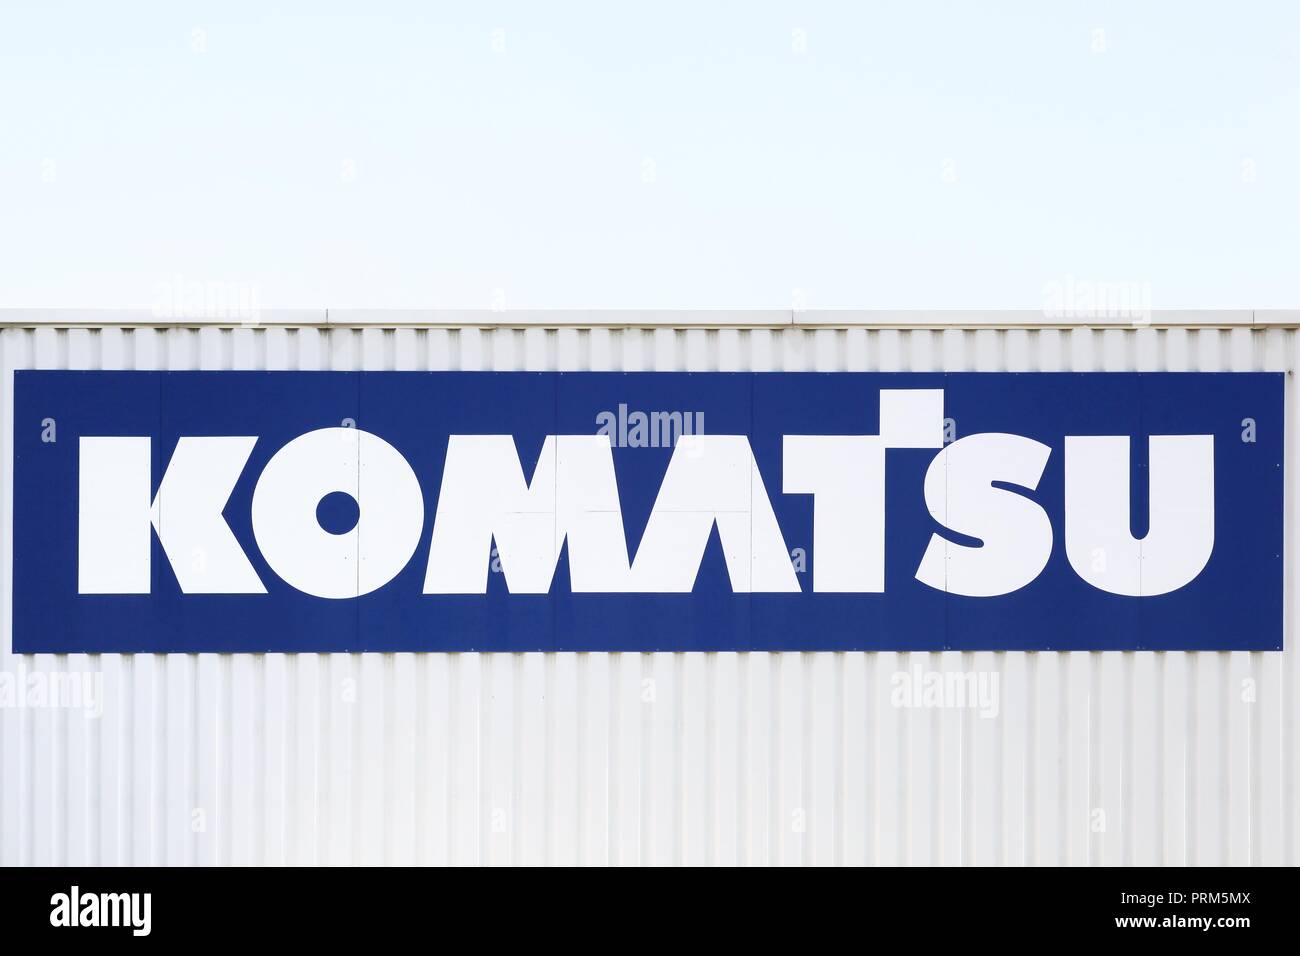 Saint Priest, Francia - 8 Settembre 2018: Komatsu logo su una parete. Komatsu è una multinazionale giapponese corporation Foto Stock